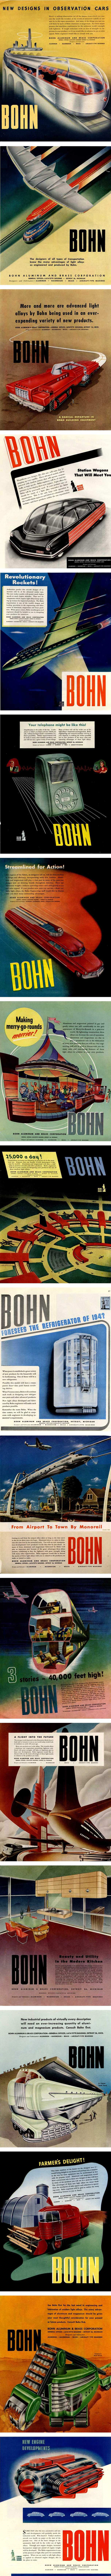 18 diseños de 1940 que predecían el futuro y no estaban tan errados 1